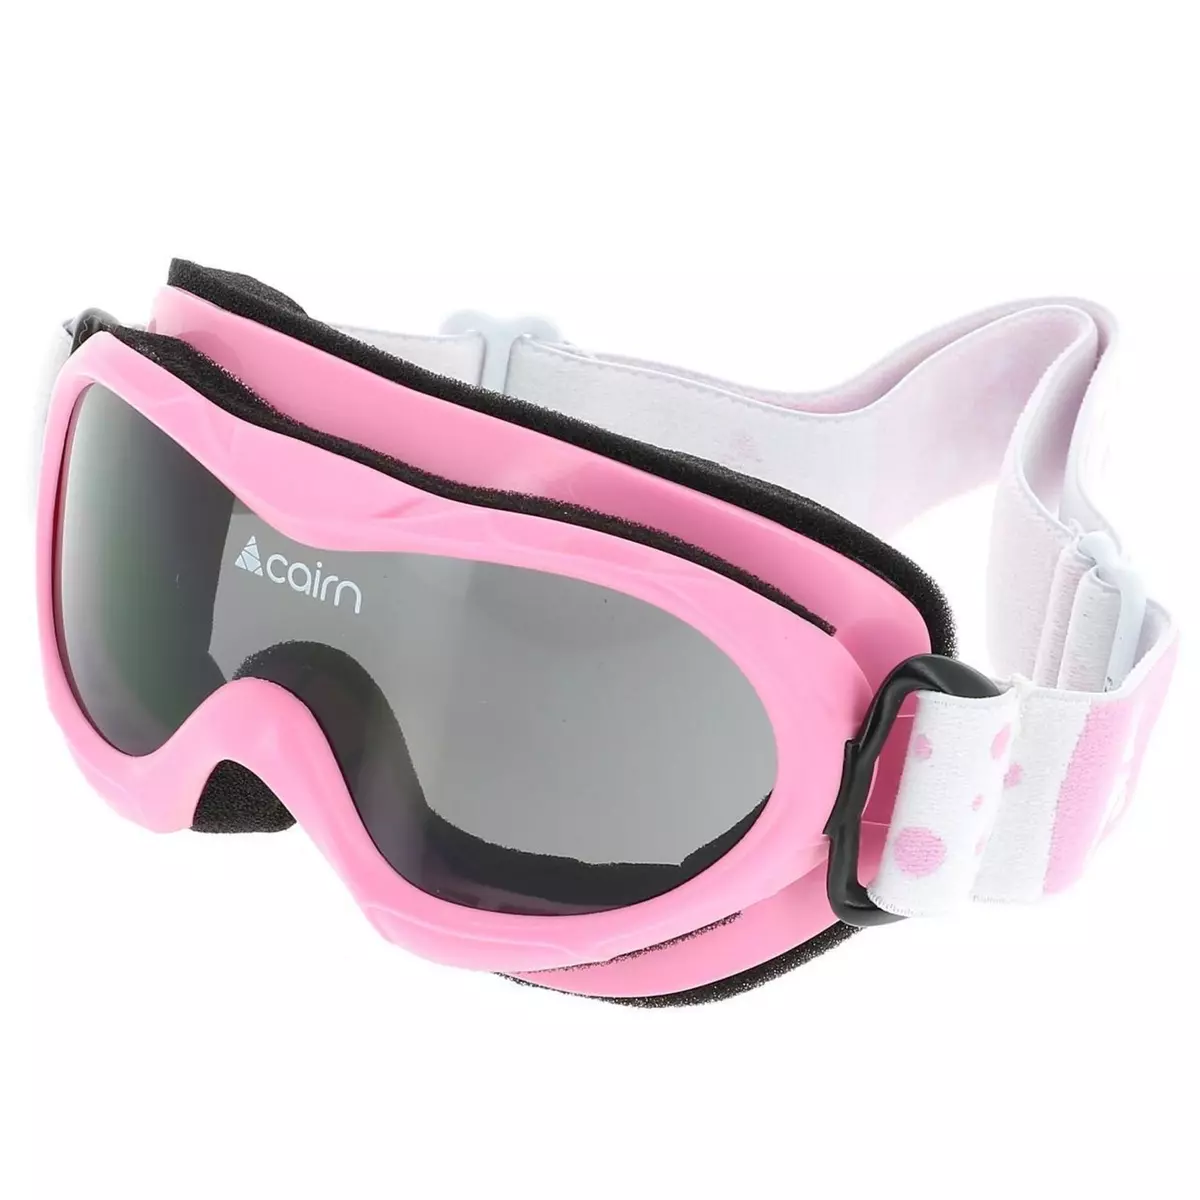 CAIRN Masque de ski Cairn Bug shiny pink 04ans Rose 20150